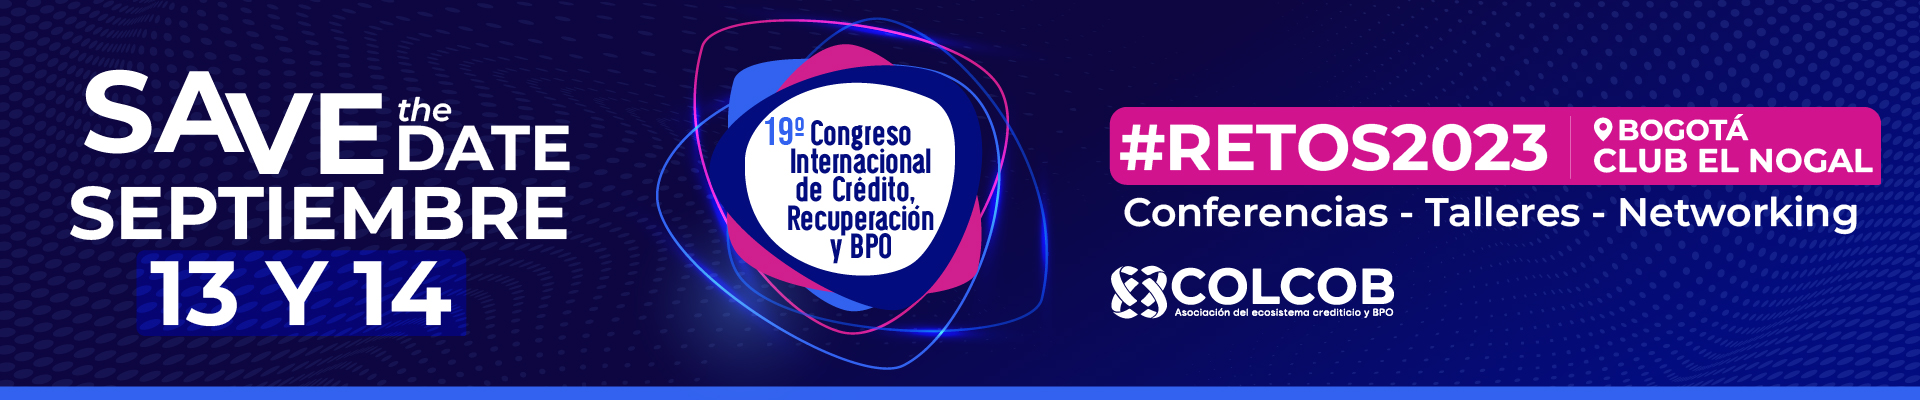 19° Congreso Internacional de Crédito, Recuperación y BPO #Retos2023 | Registro VIP